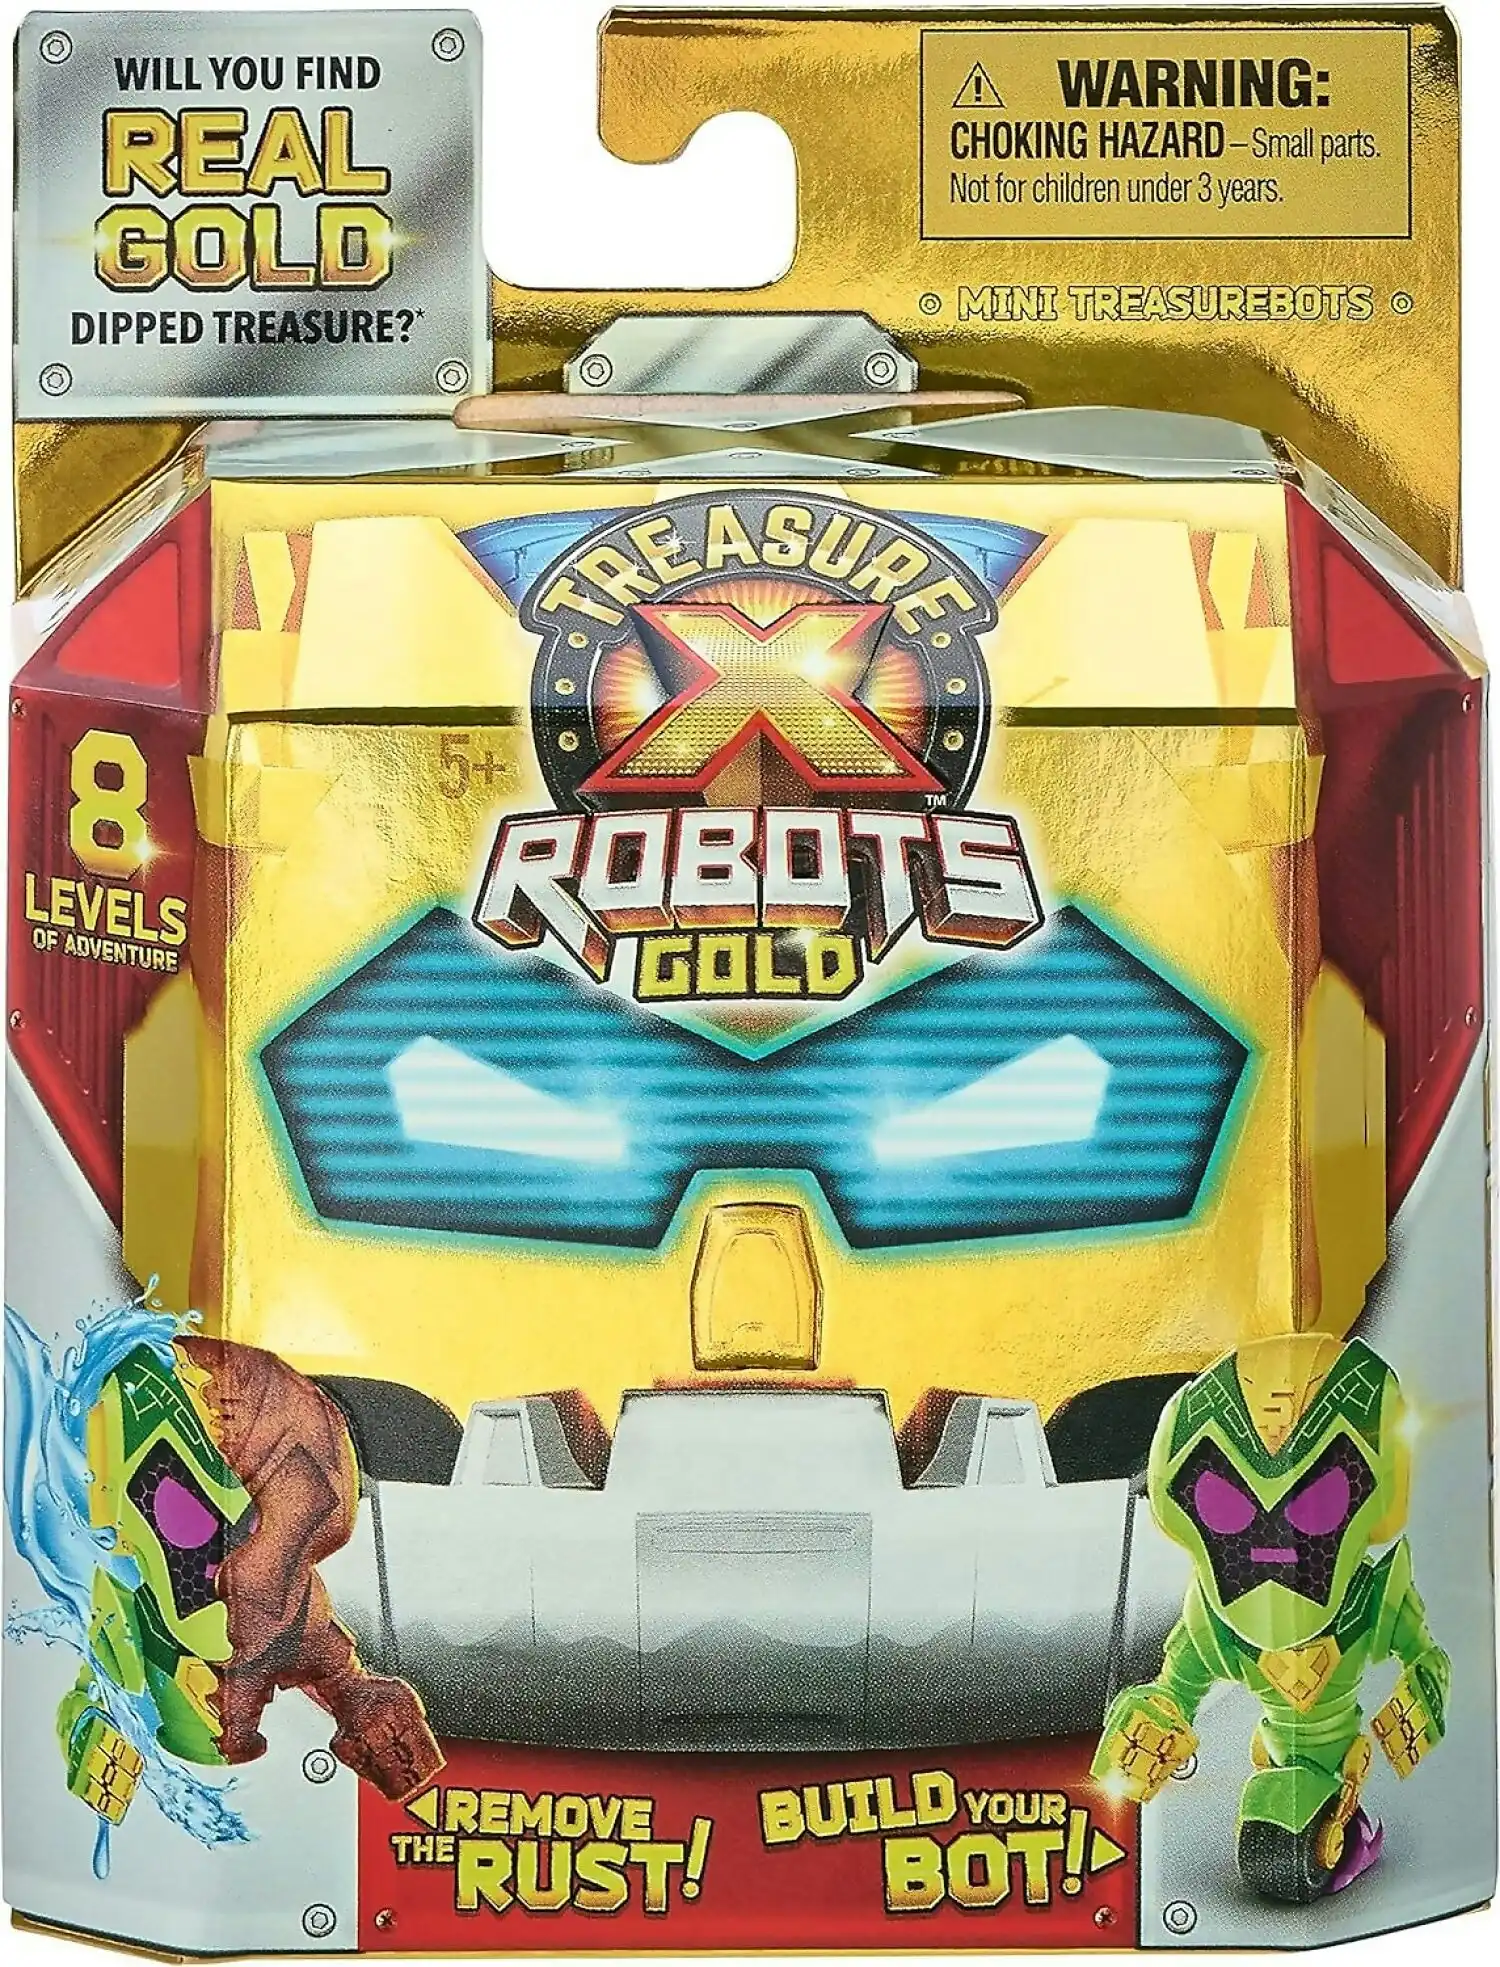 Treasure X - S9 Robots Gold Minitreasure Bots